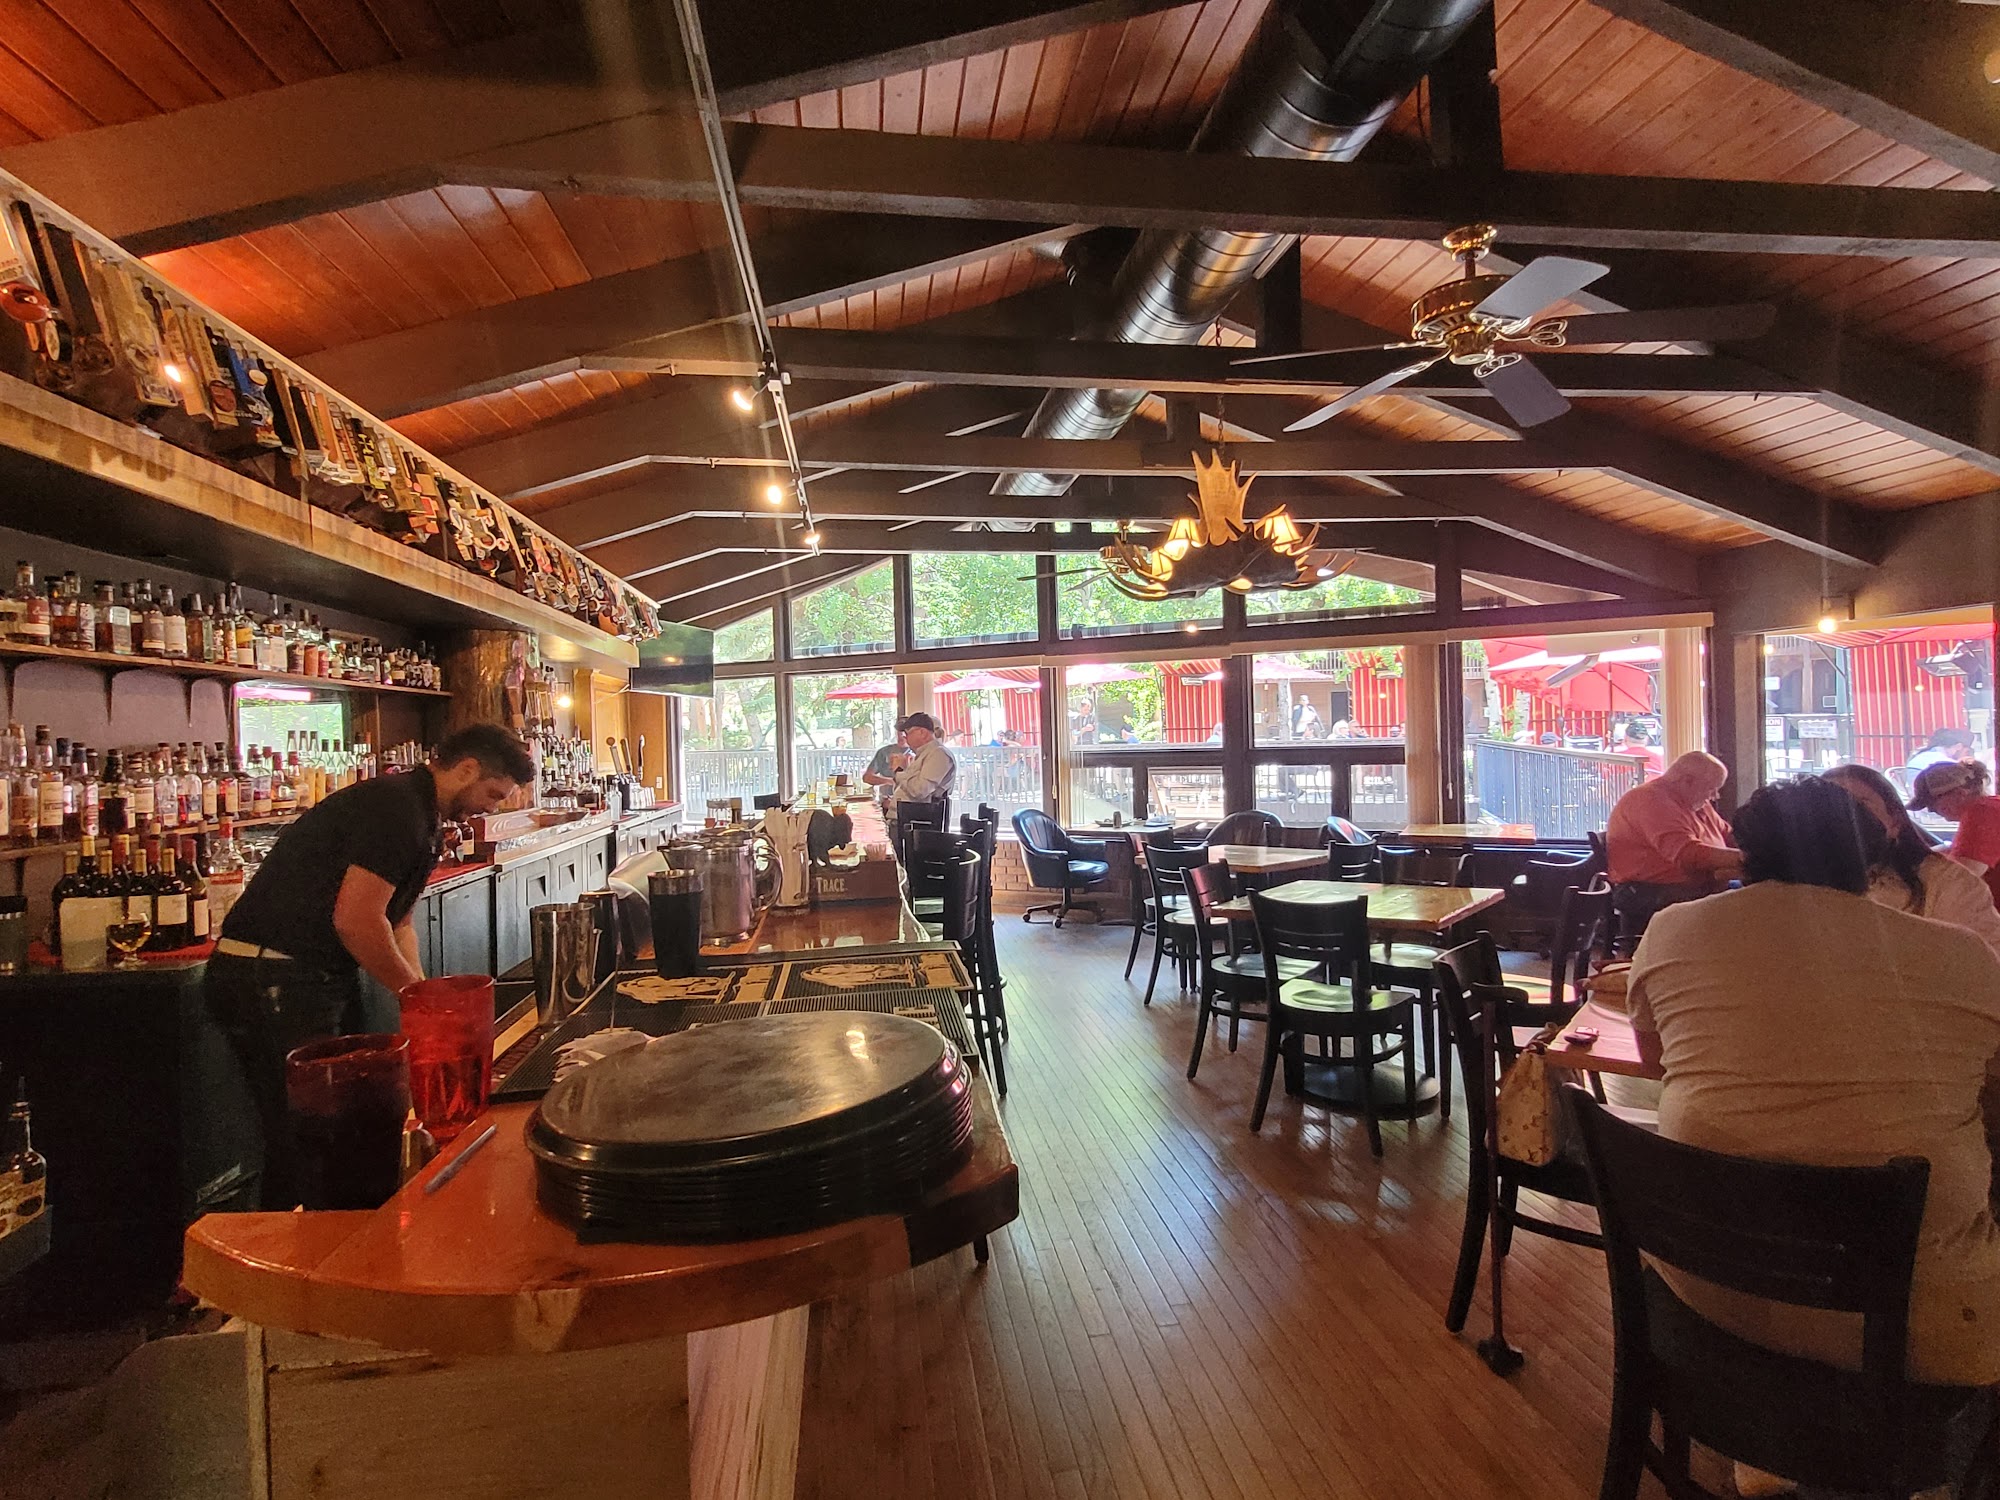 The Wapiti Colorado Pub